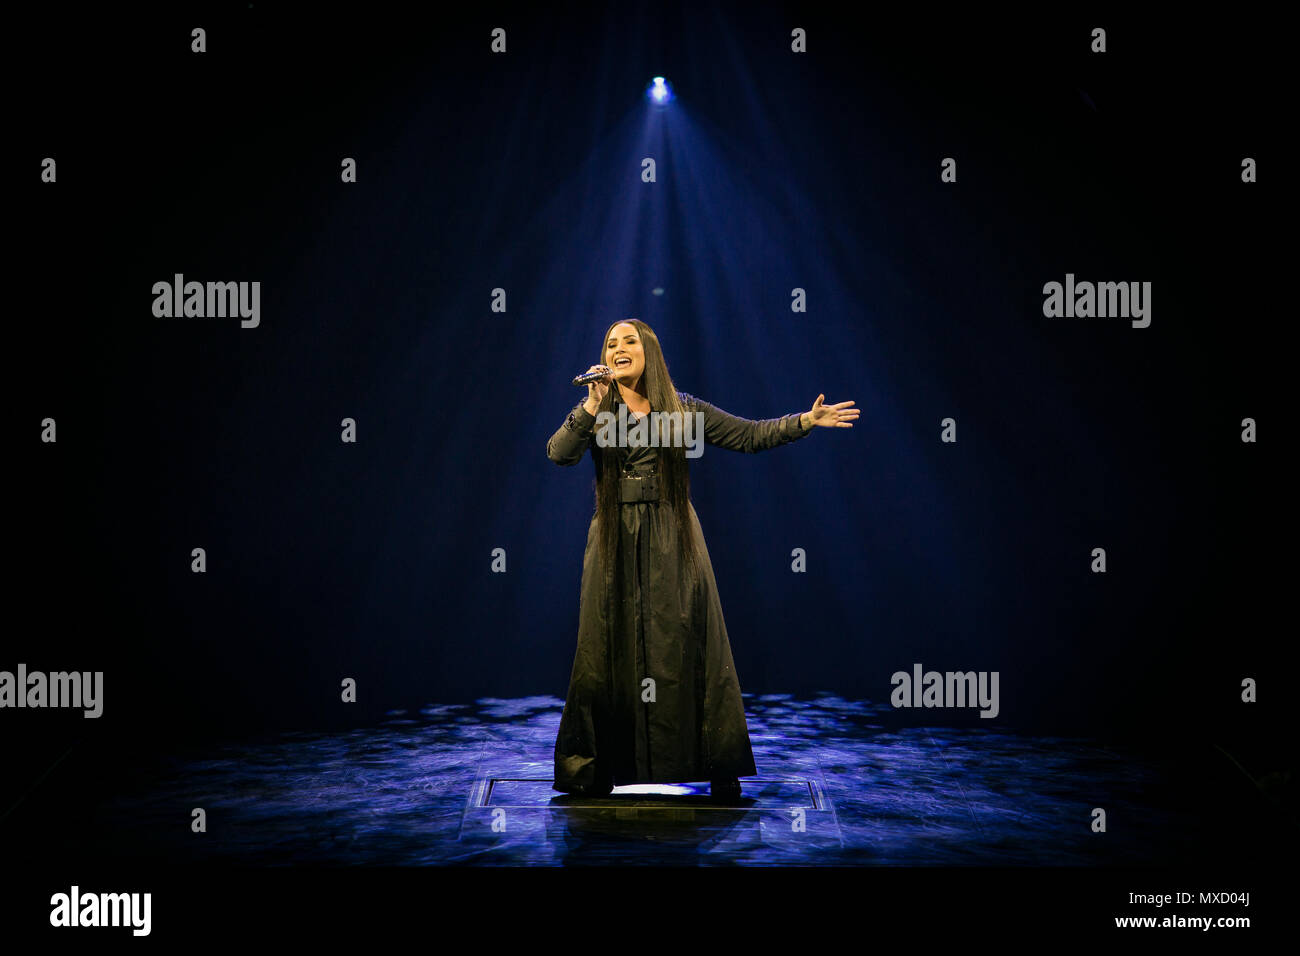 Norvège, Oslo - 1 juin 2018. Le chanteur, auteur-compositeur et musicien Demi Lovato effectue un concert live à Oslo Spektrum d'Oslo. (Photo crédit : Gonzales Photo - Tord Litleskare). Banque D'Images